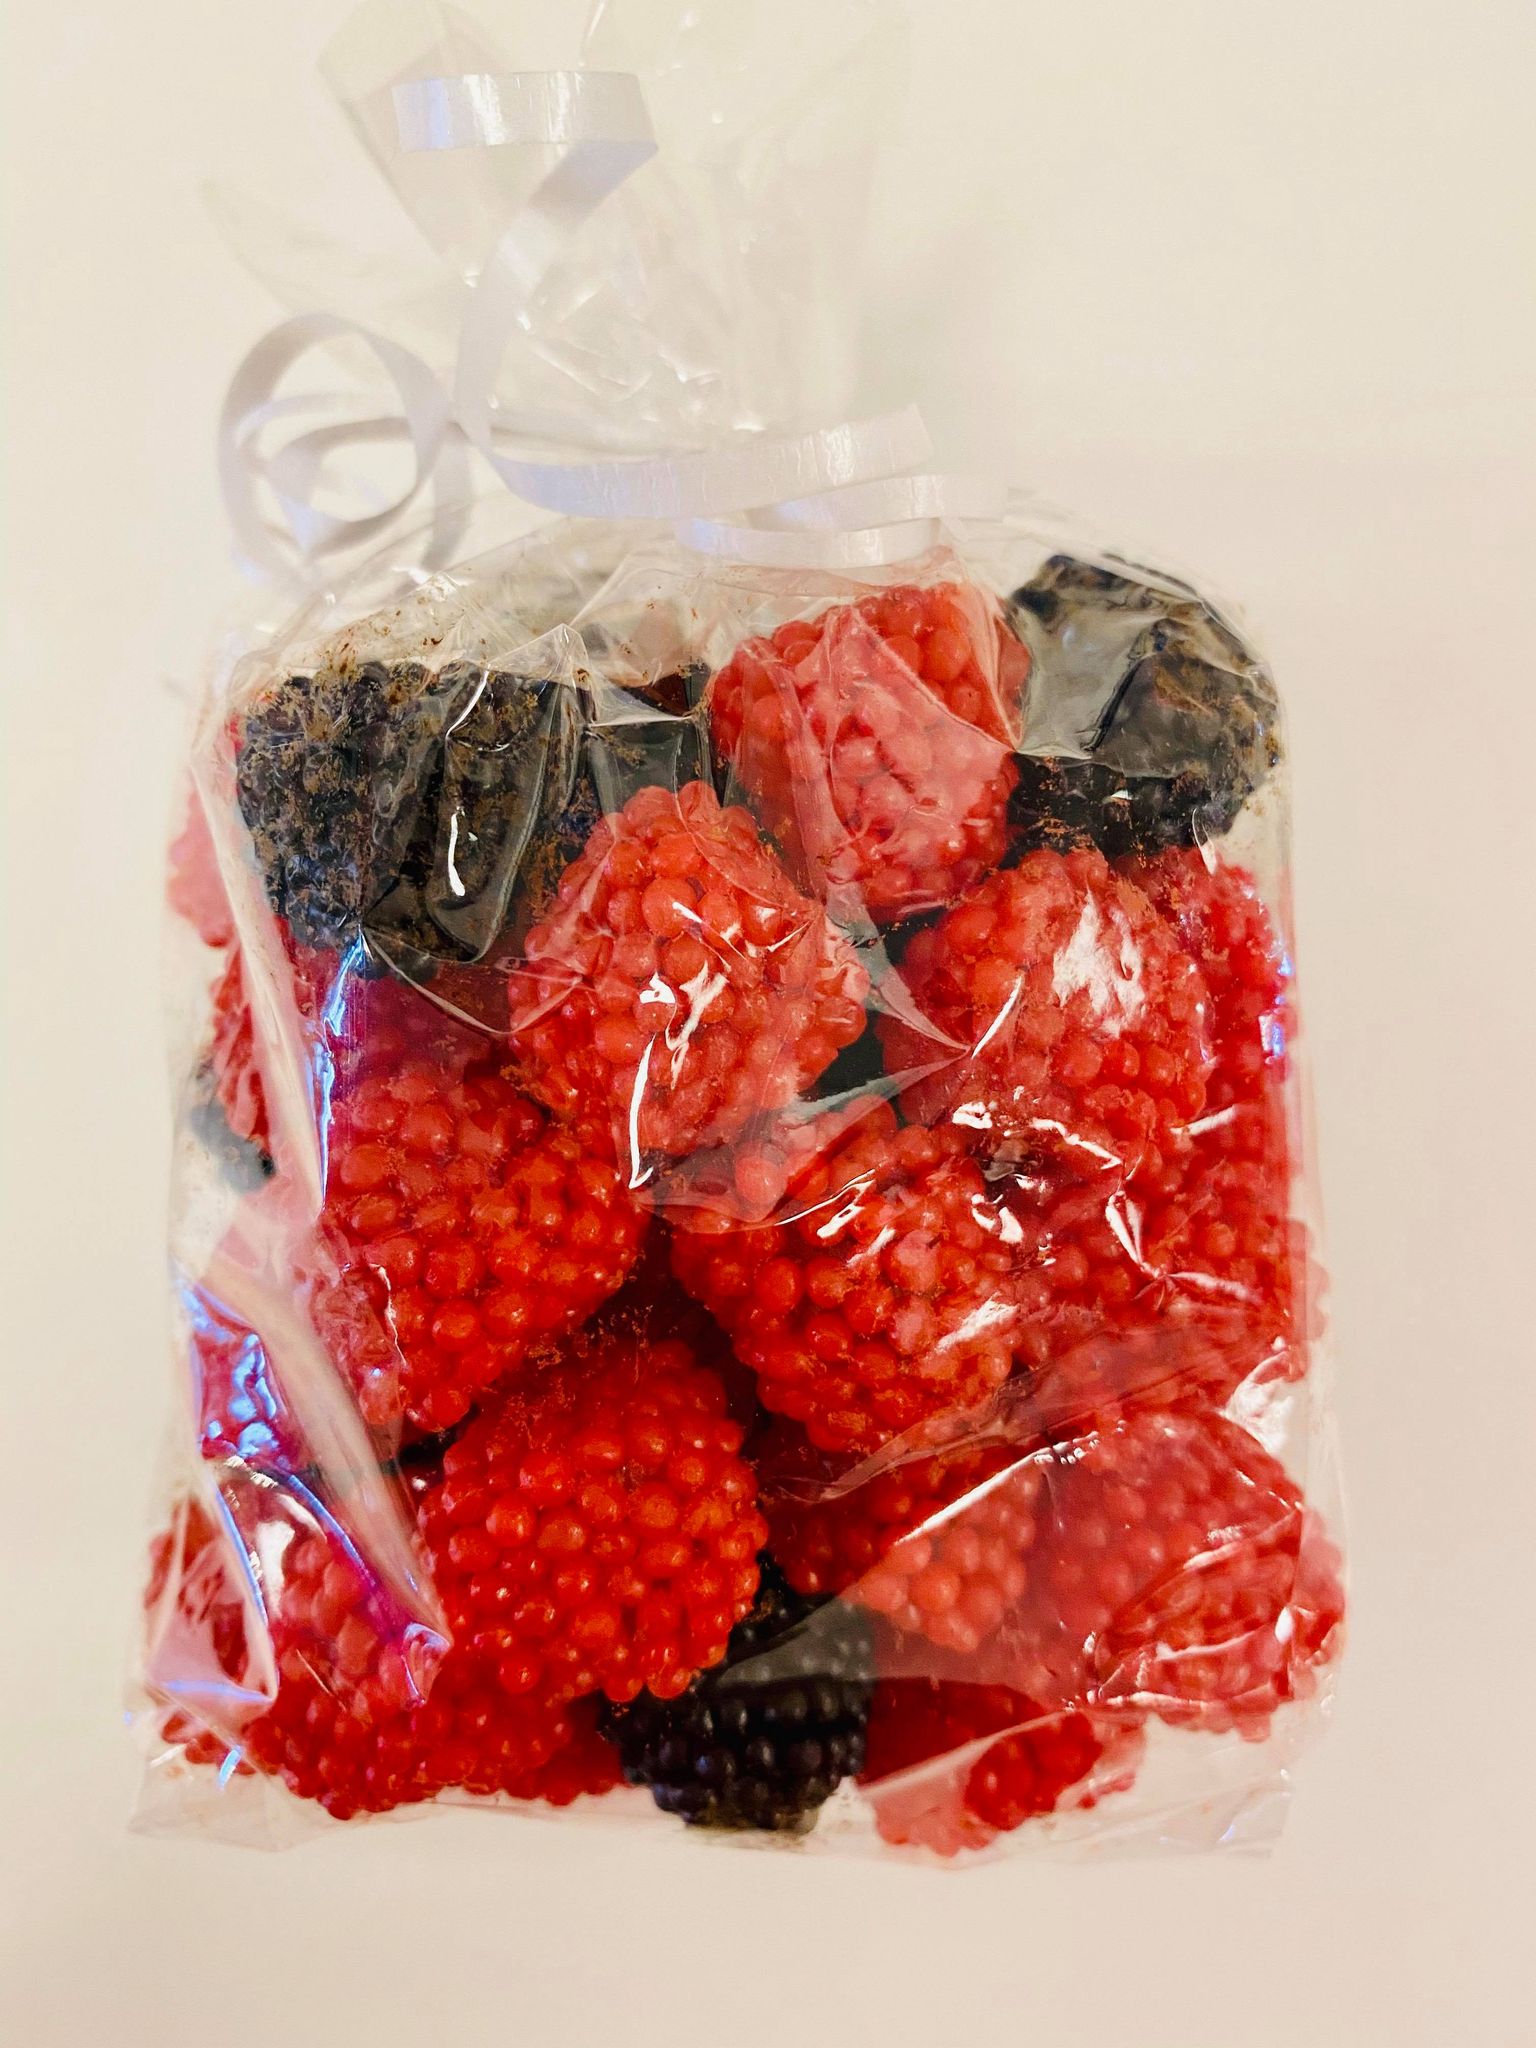 Red & Black Raspberries